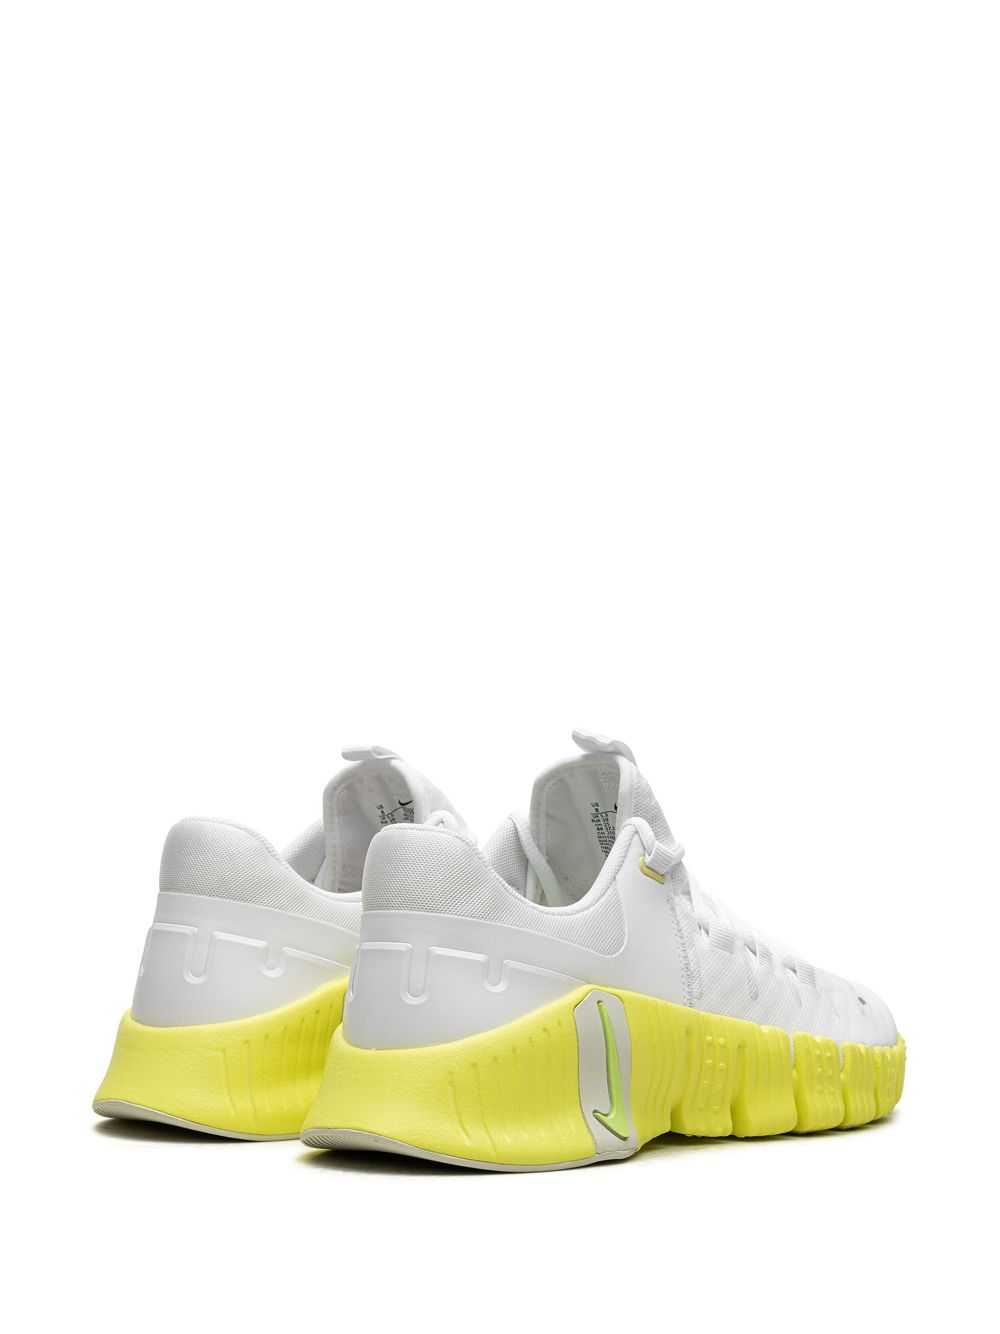 Nike Free Metcon 5 "Lime Blast" sneakers White